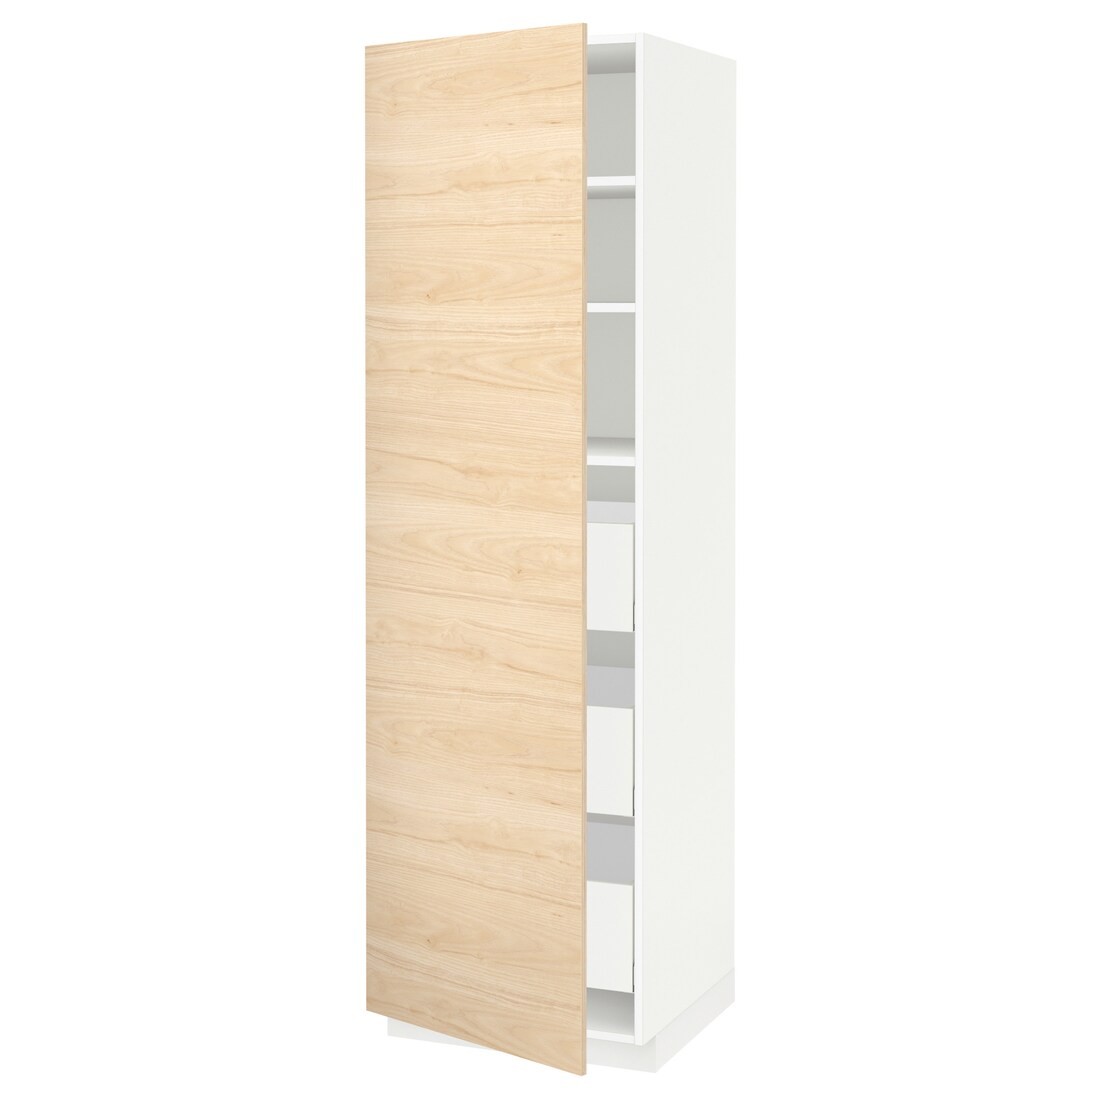 IKEA METOD МЕТОД / MAXIMERA МАКСИМЕРА Шкаф высокий с ящиками, белый / Askersund узор светлый ясень, 60x60x200 см 89355907 893.559.07